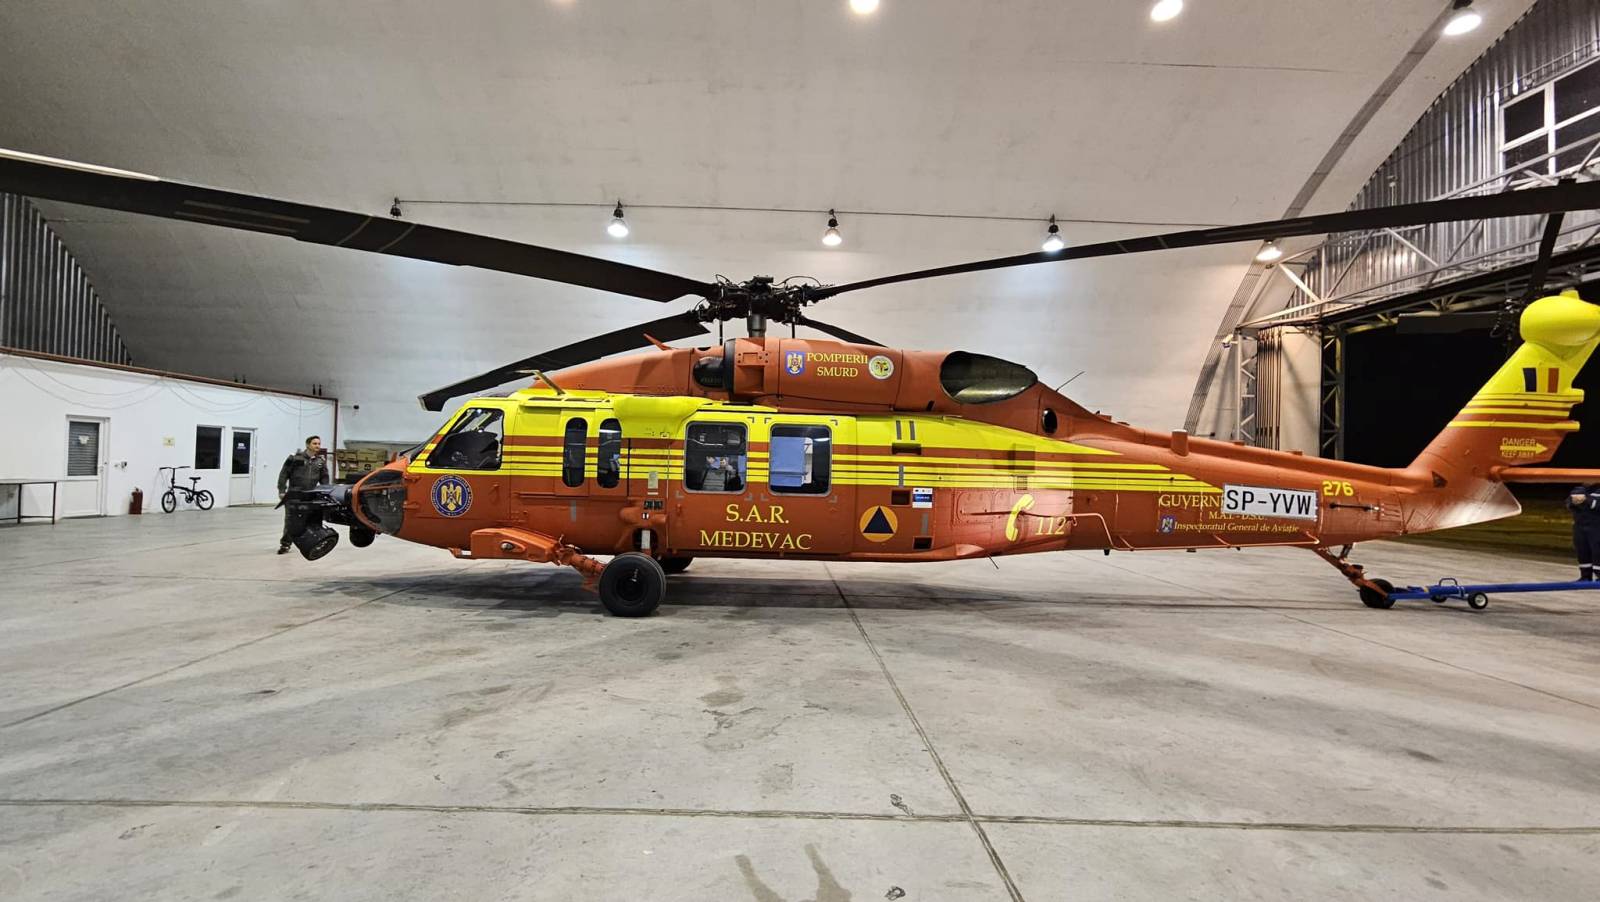 DSU Roemenië kondigt ontvangst van nieuwe Black Hawk-helikopter VIDEO aan